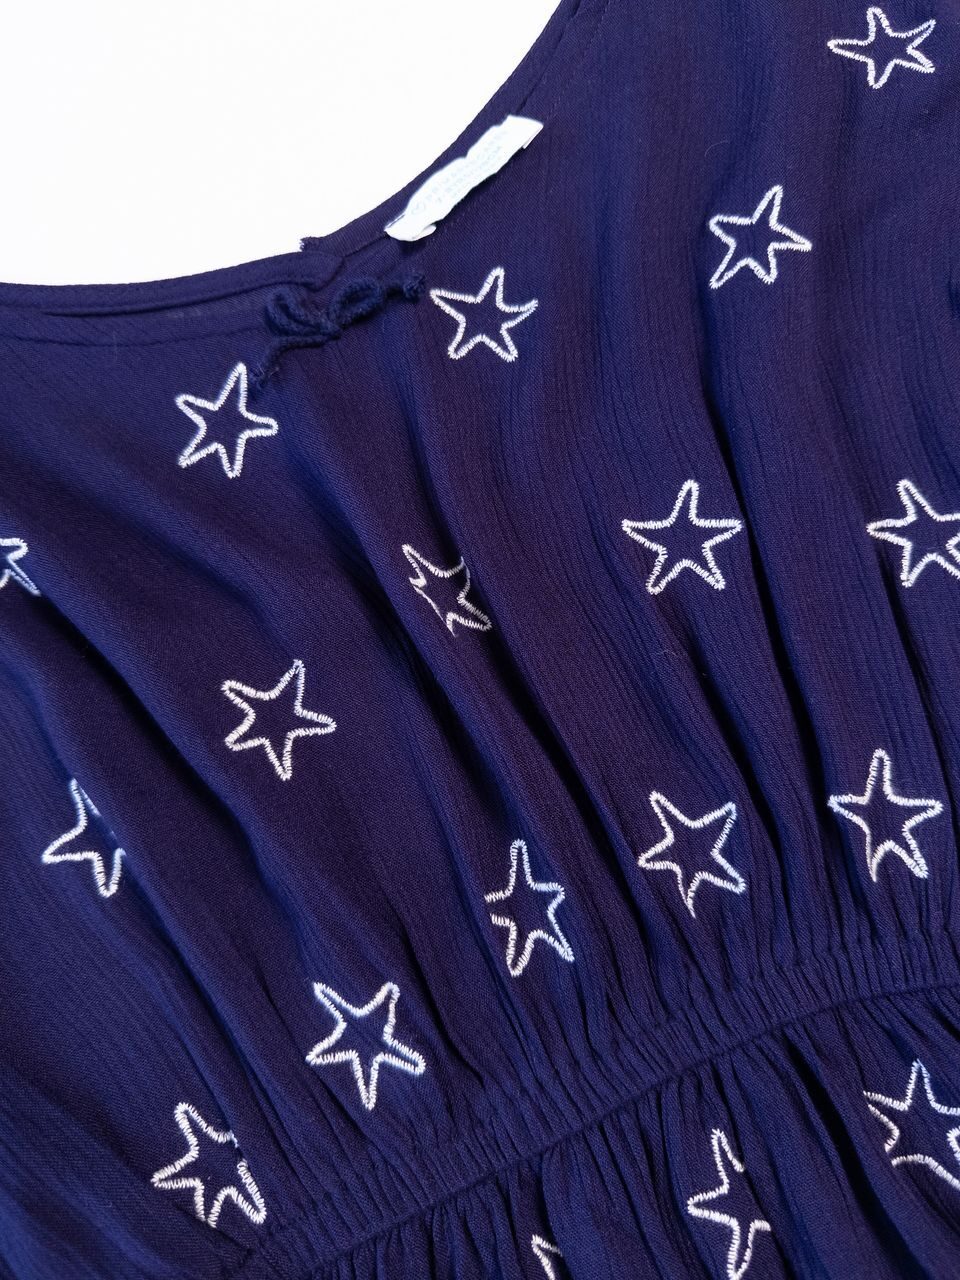 Платье-туника в поясе резинка цвет фиолетовый принт Звезды на рост 128 см 7-8 лет Primark